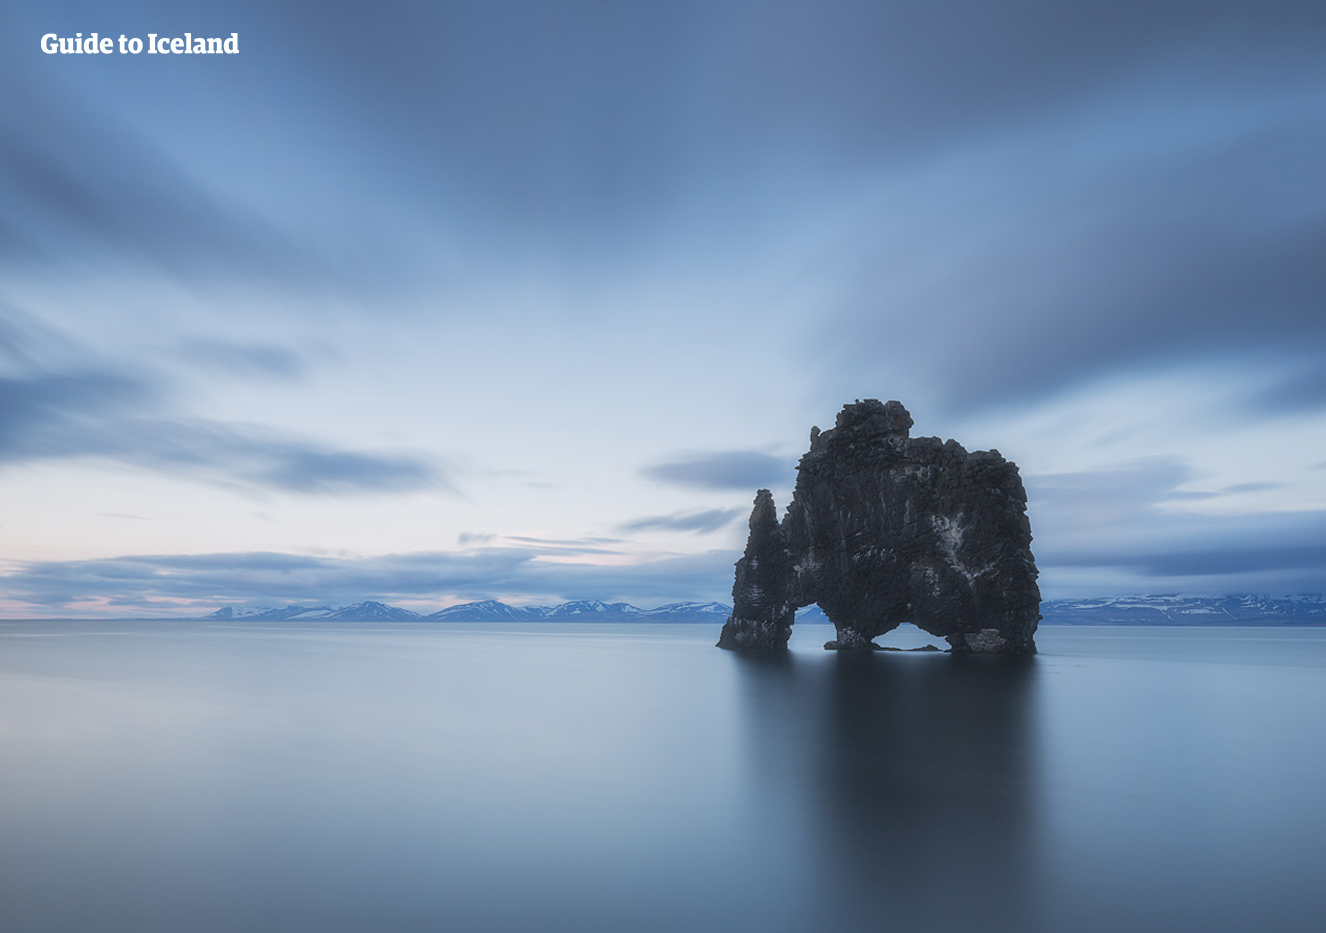 Malownicza formacja skalna Hvítserkur w północnej Islandii, wynurzająca się z oceanu niczym przerażający smok